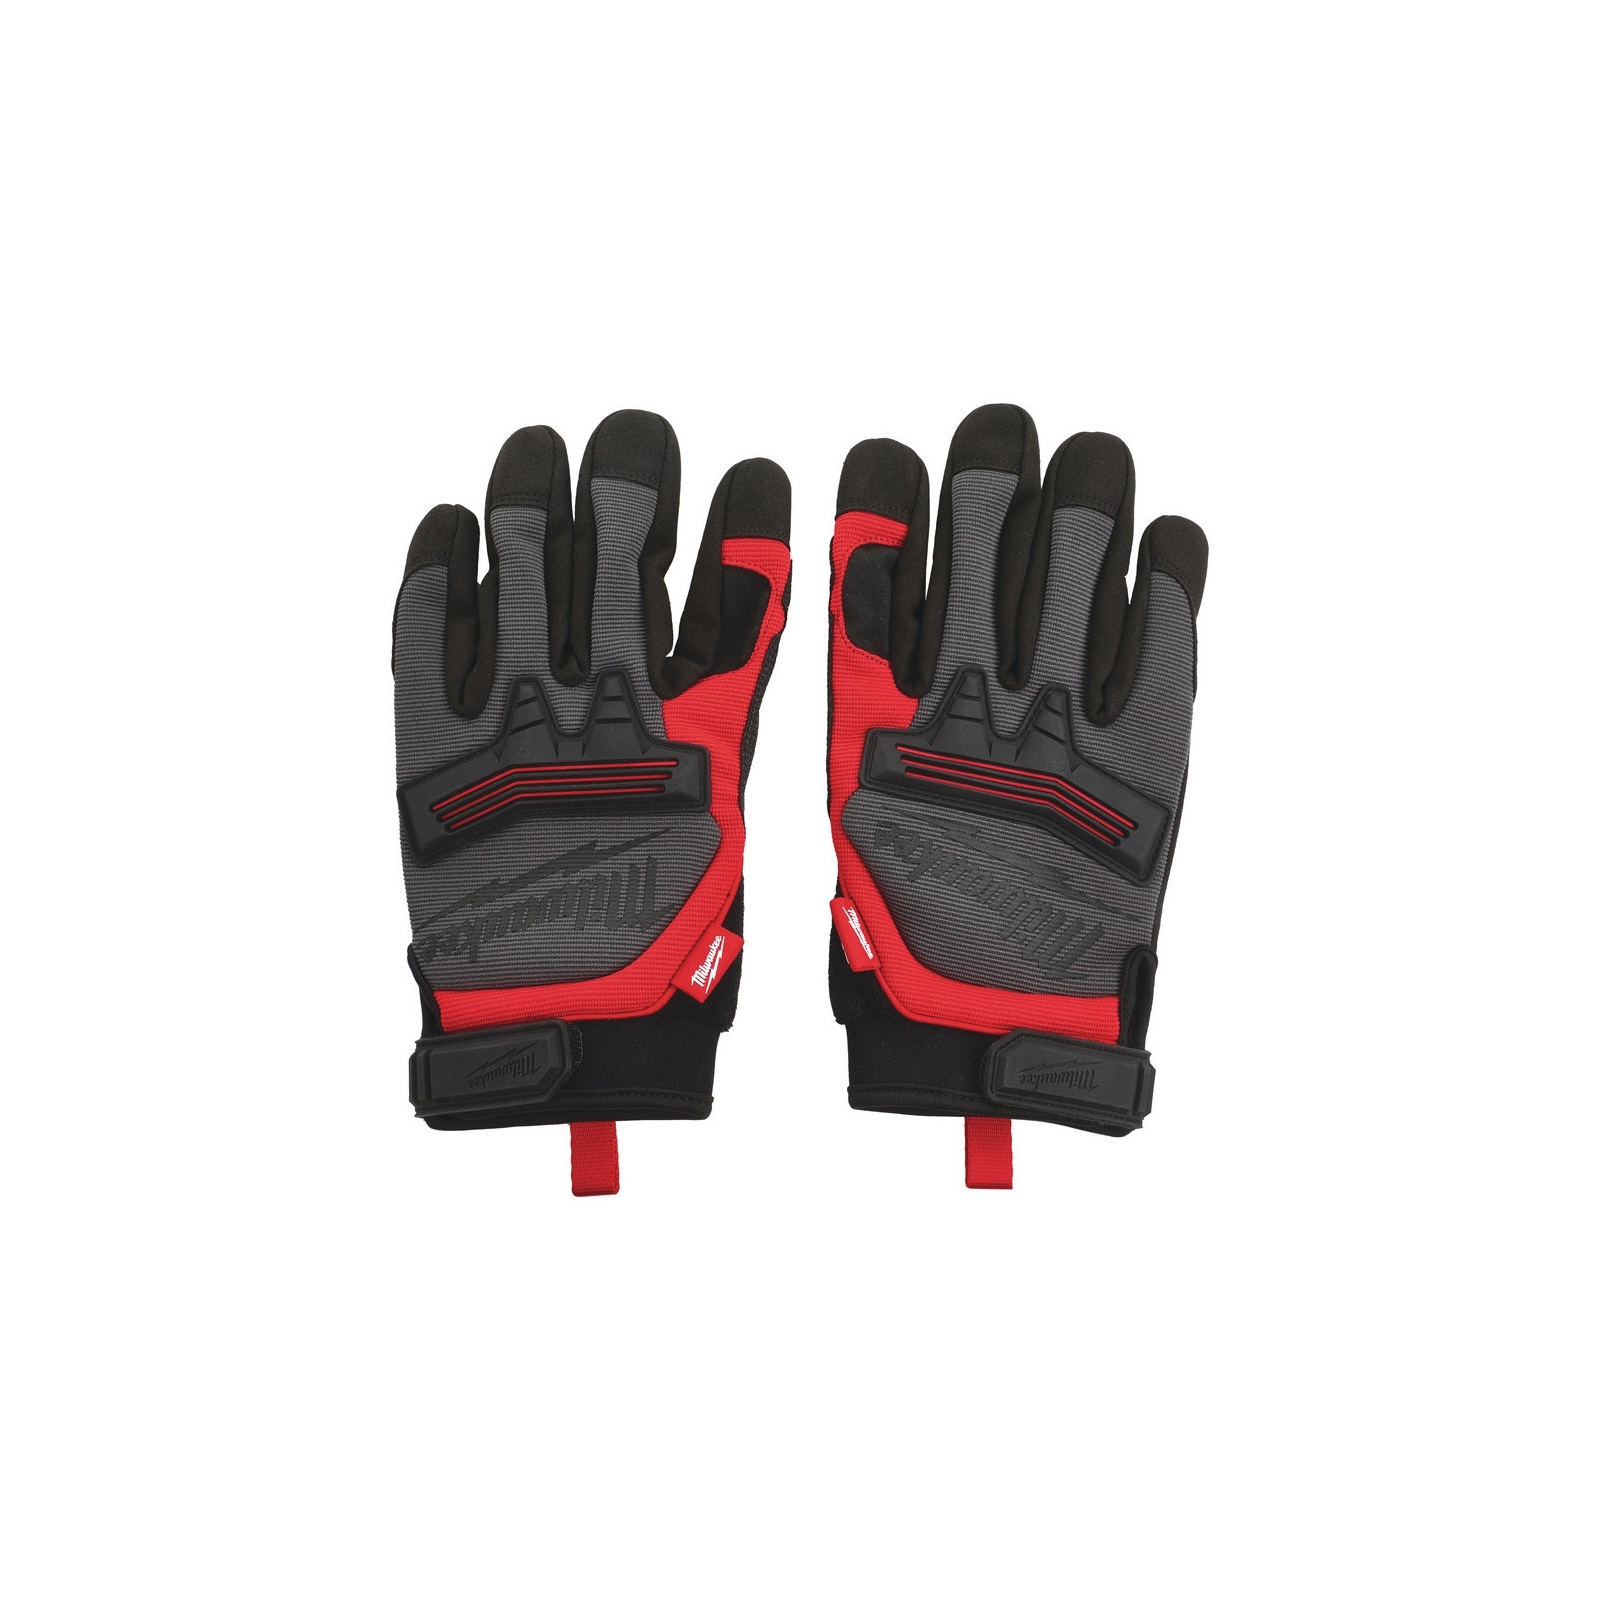 Защитные перчатки Milwaukee категория II EN388:2016 (2121X), М/8 (48229731)